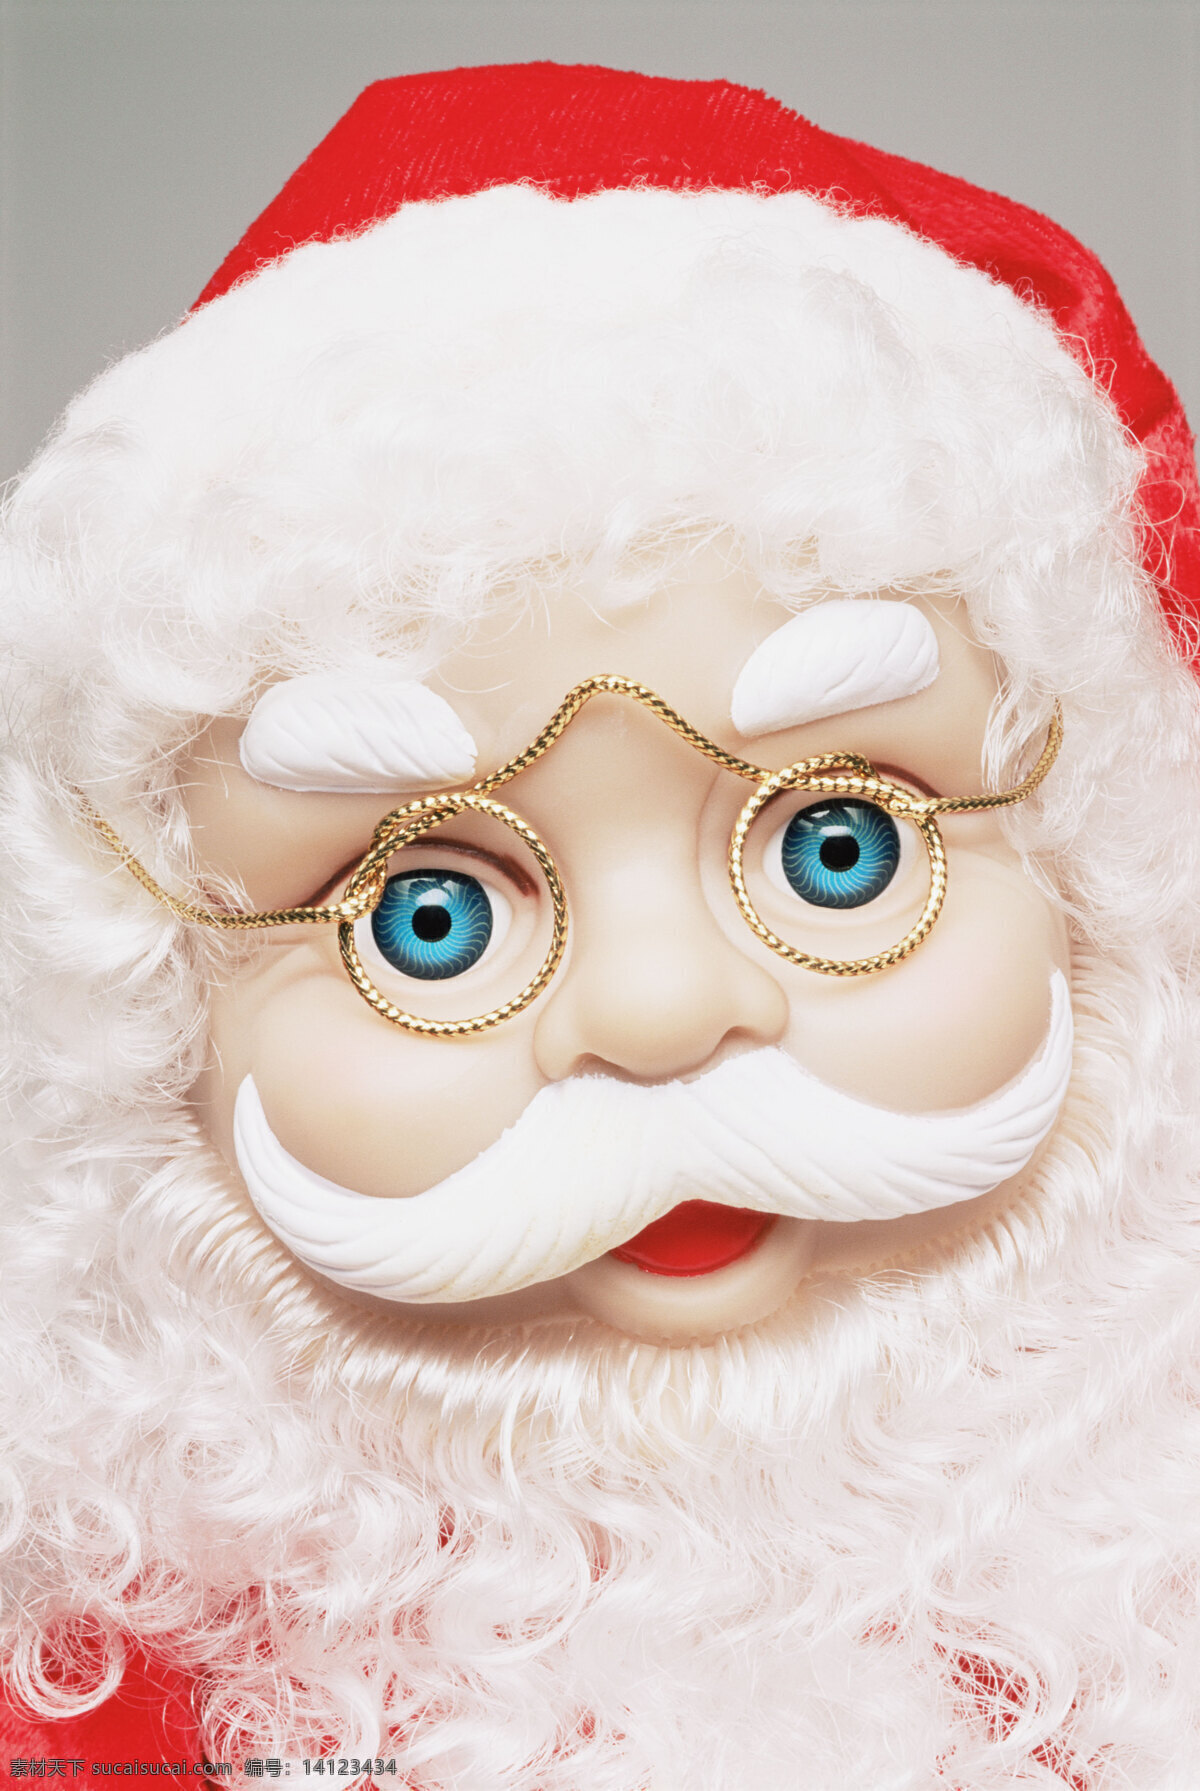 圣诞老人 头像 高清 胡子 节庆 圣诞 圣诞节 西方节日 蓝眼睛 sxzj 节日素材